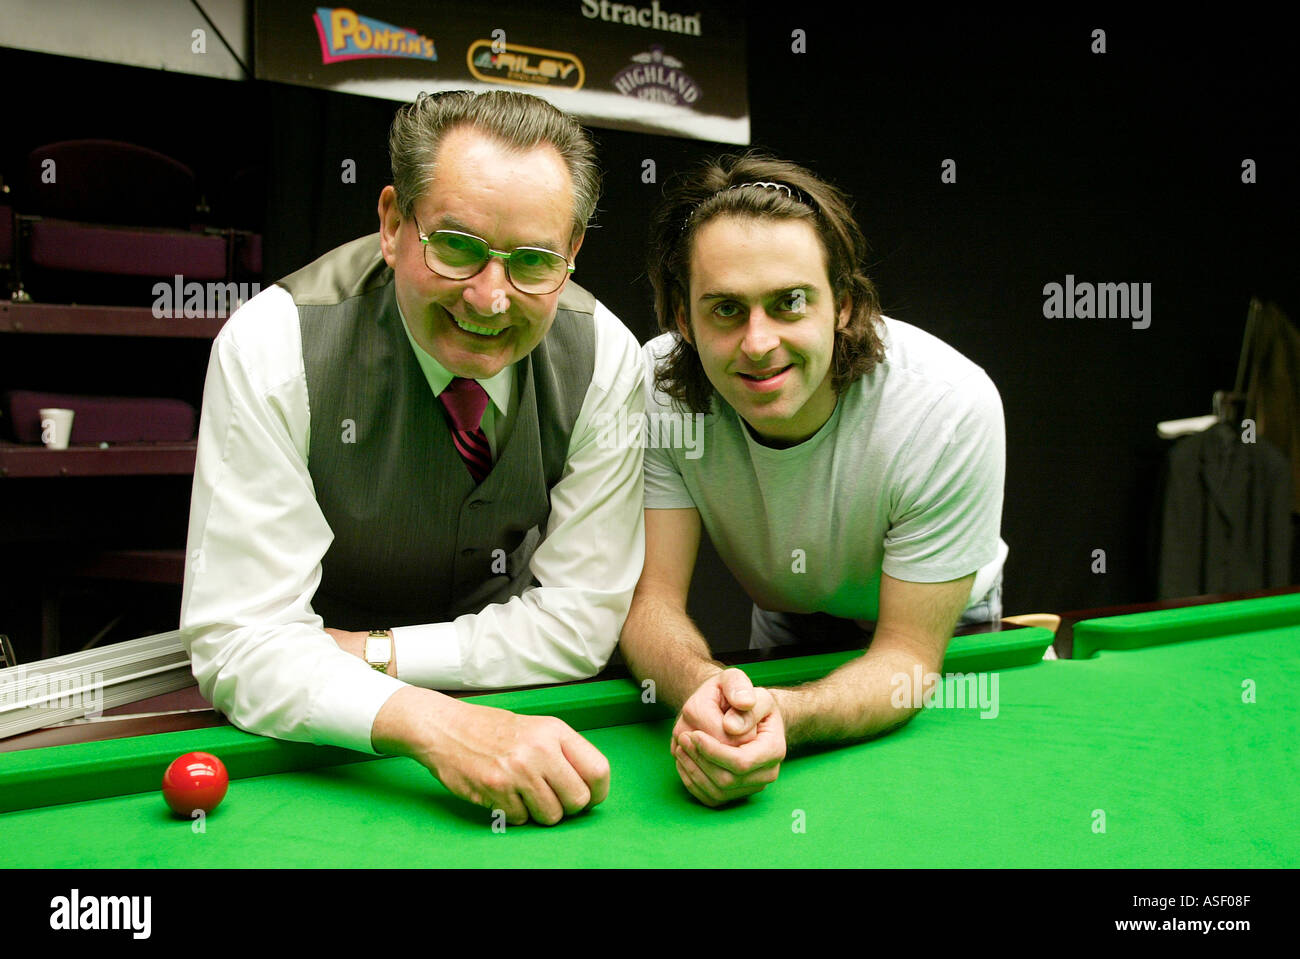 2004 World Snooker Champion Ronnie O Sullivan allenata da mentore Ray Reardon Foto Stock